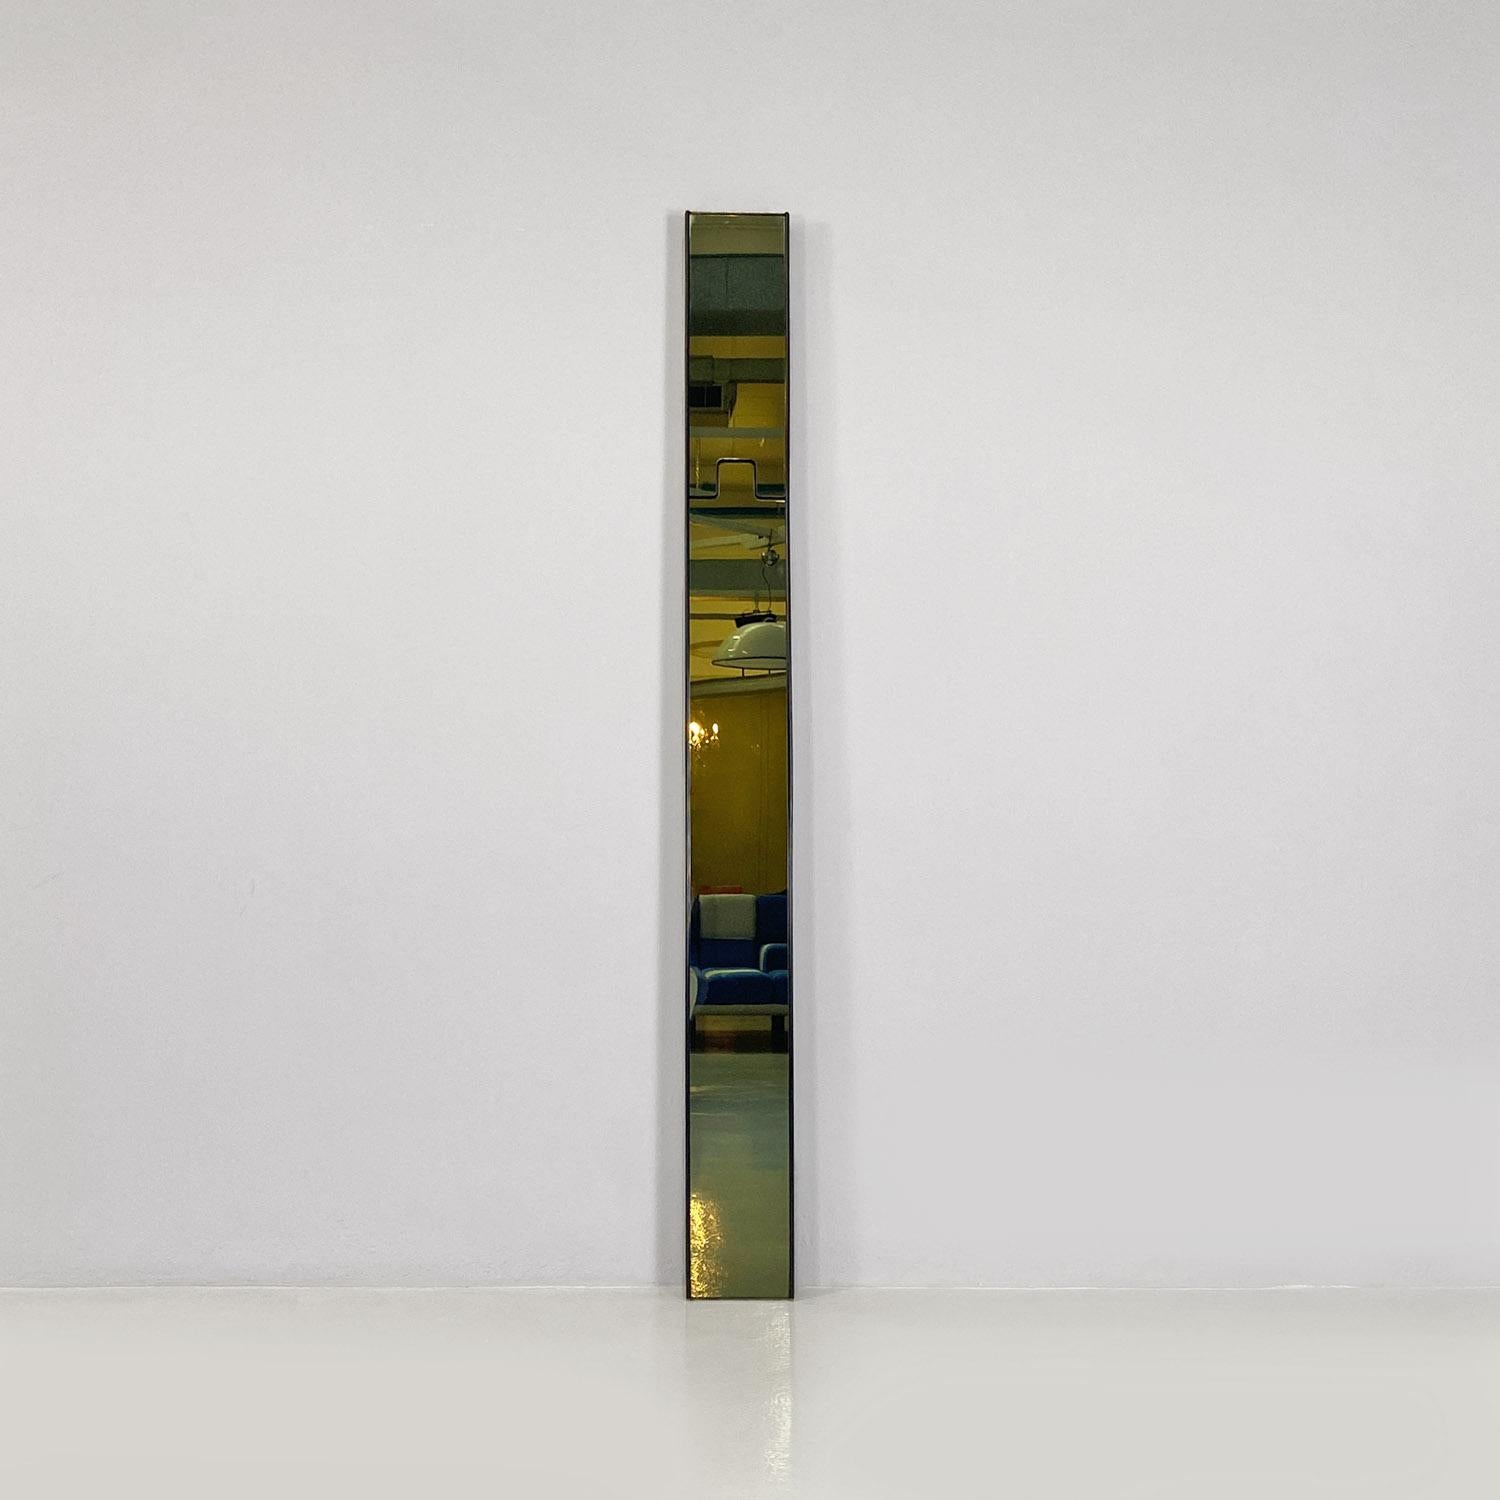 Miroirs muraux modulaires Gronda en verre fumé et plastique noir de Luciano Bertoncini pour Elco, 1970.
Miroir mural modèle Gronda composé de quatre modules rectangulaires avec verre miroir fumé et avec la structure du cadre en plastique noir. La